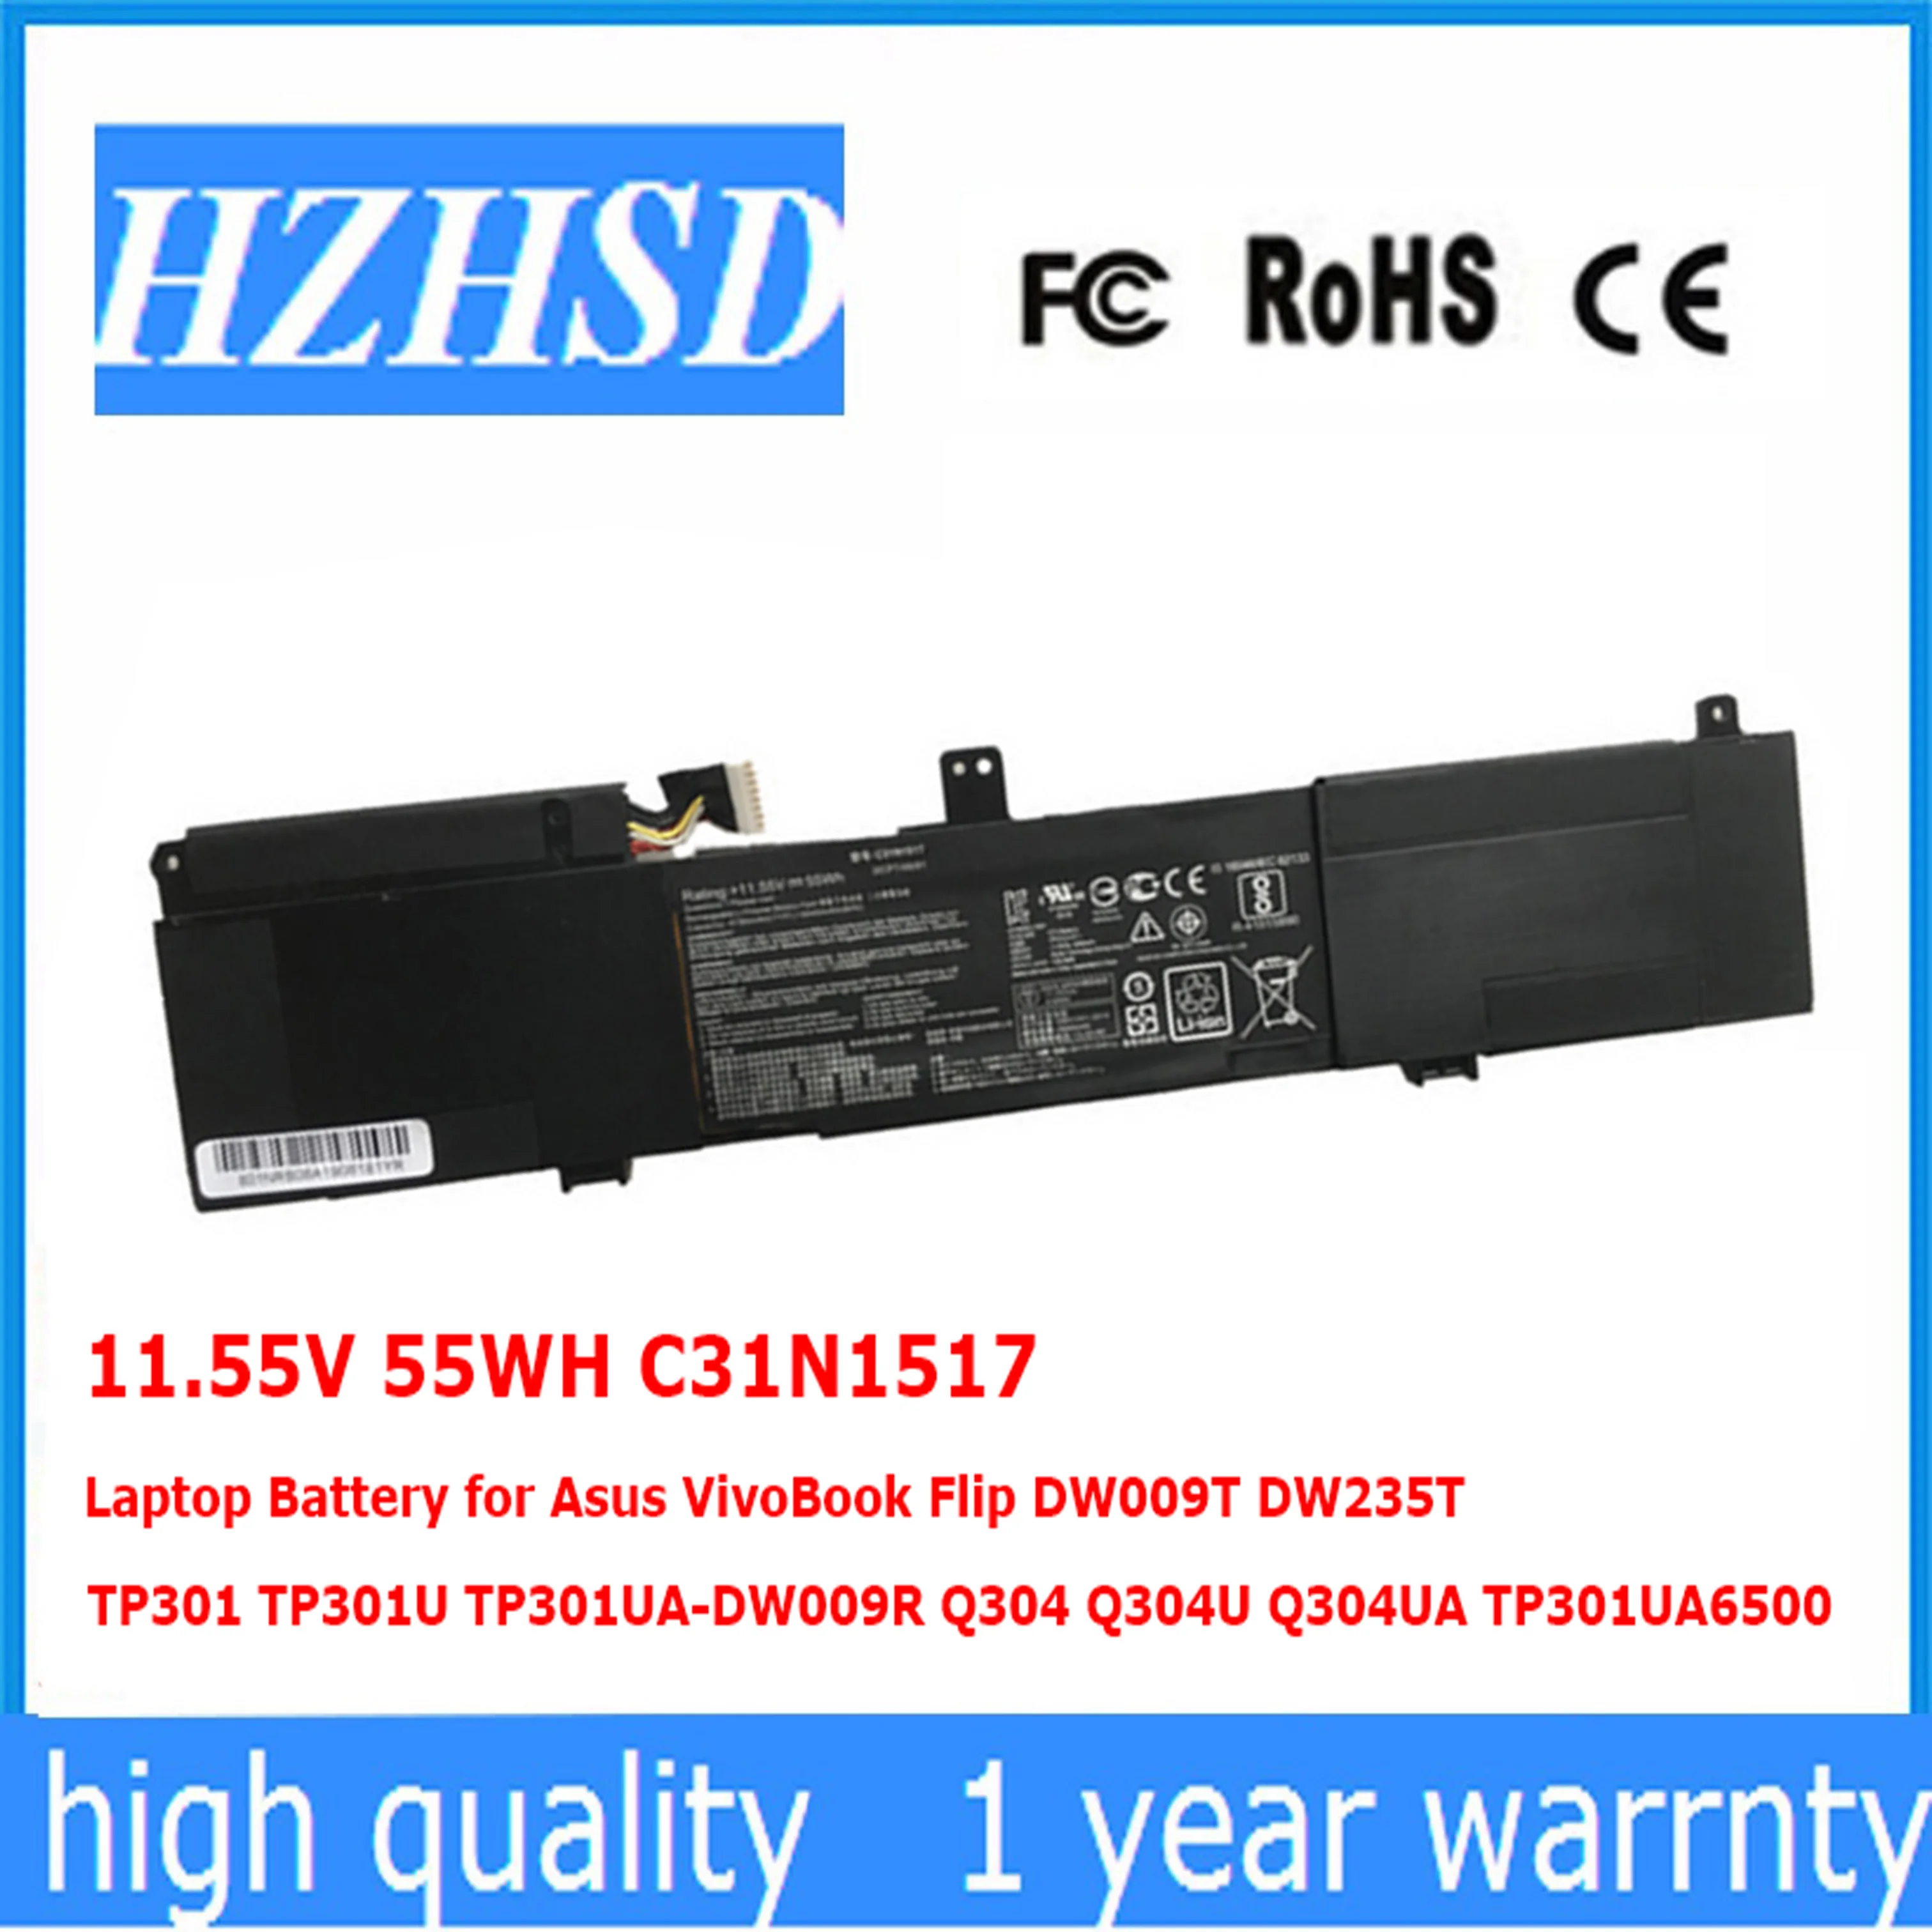 

11.55V 55WH C31N1517 Laptop Battery for Asus VivoBook Flip DW009T DW235T TP301 TP301U TP301UA-DW009R Q304 Q304U Q304UA TP301UA65